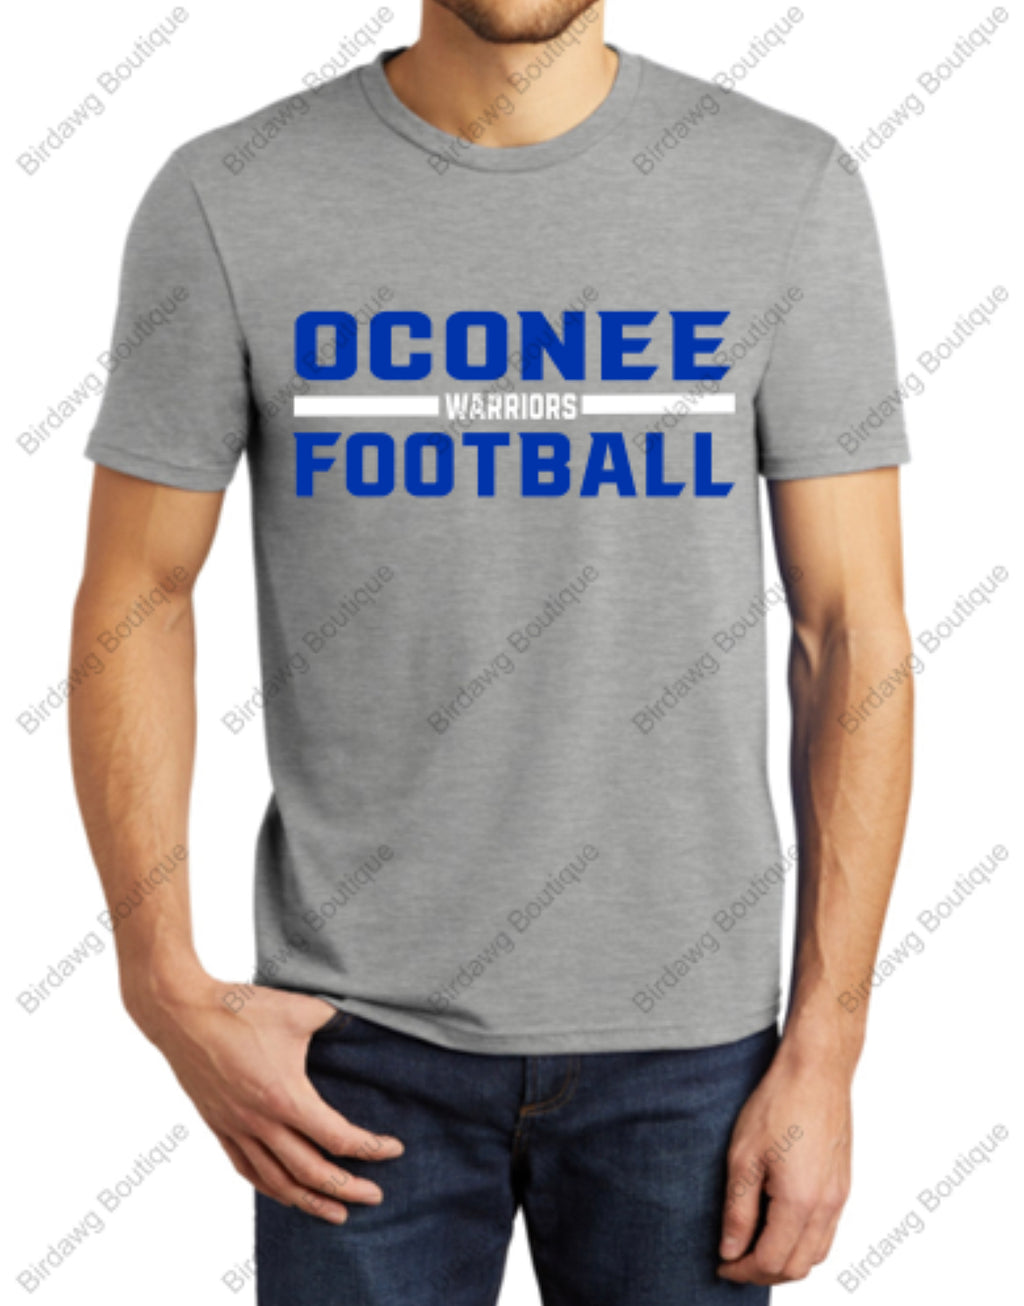 Oconee Football two color tshirt